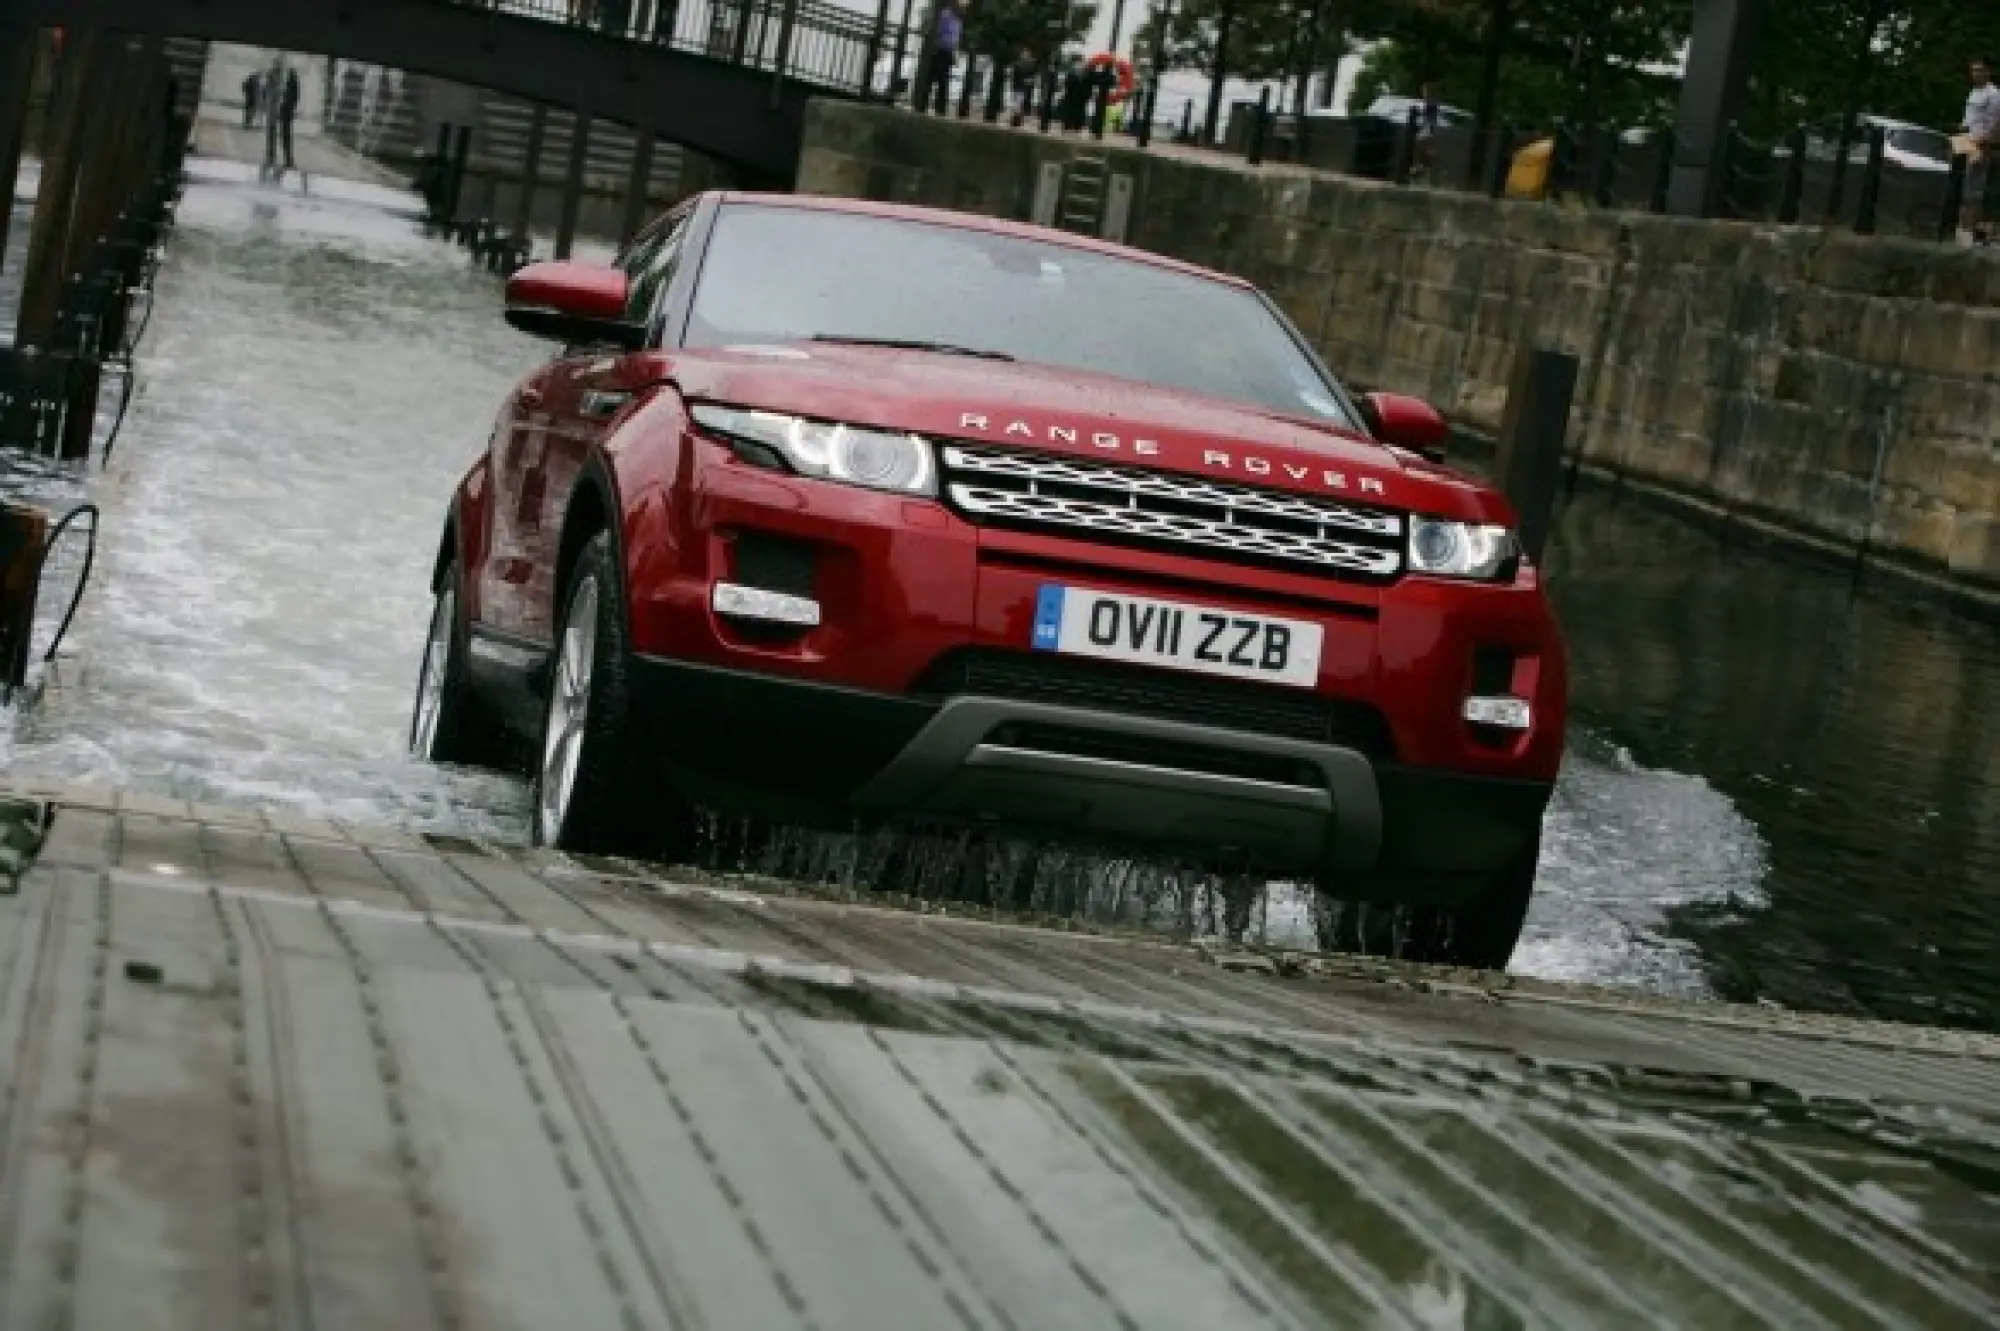 Land Rover Range Rover Evoque nuove foto ufficiali - 1